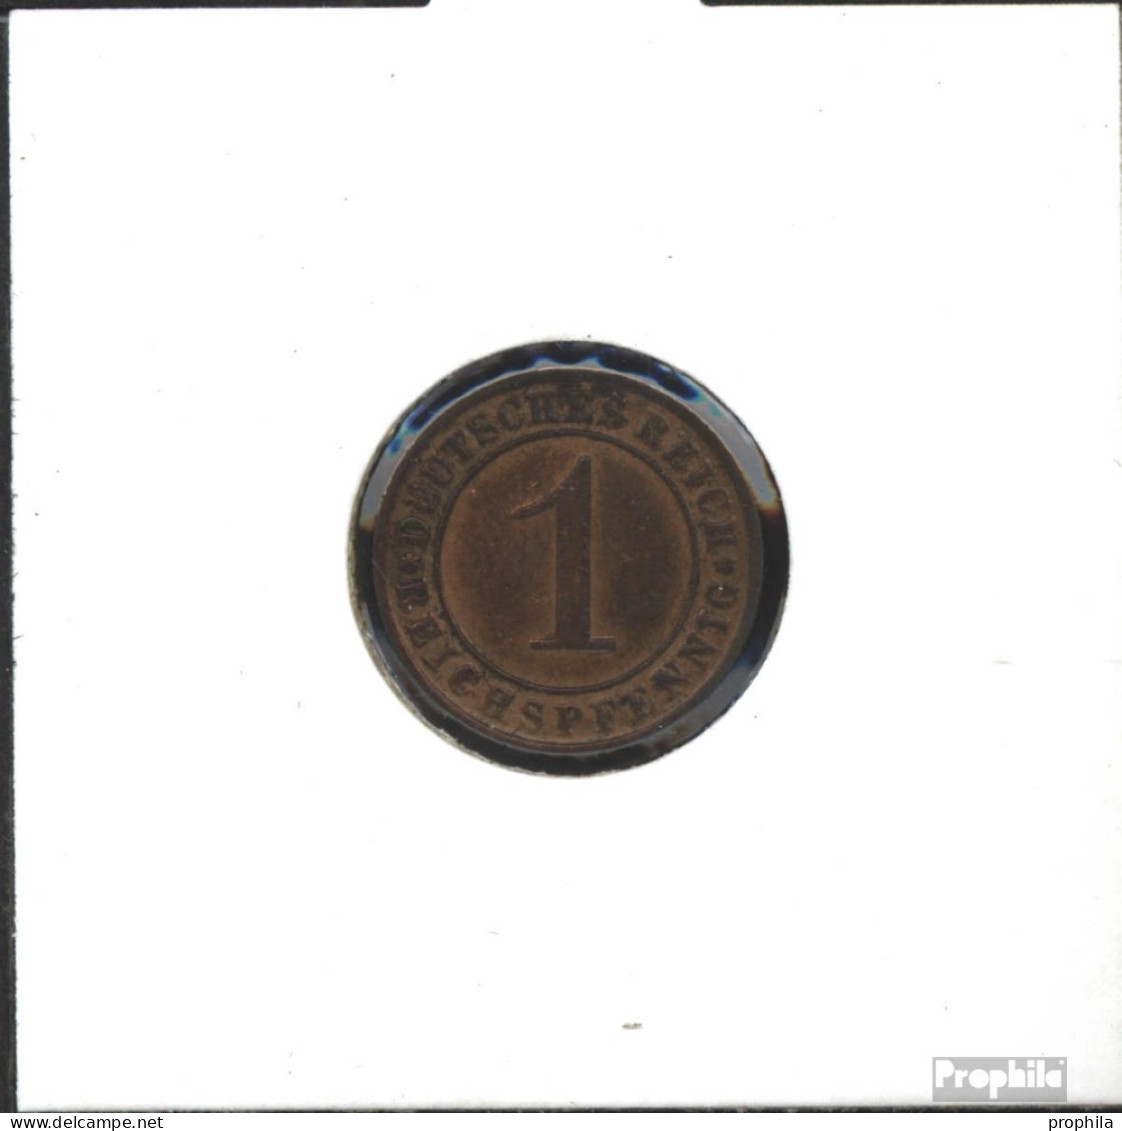 Deutsches Reich Schönnr: 313 1930 F Sehr Schön Bronze Sehr Schön 1930 1 Reichspfennig Ährengarbe - 1 Rentenpfennig & 1 Reichspfennig